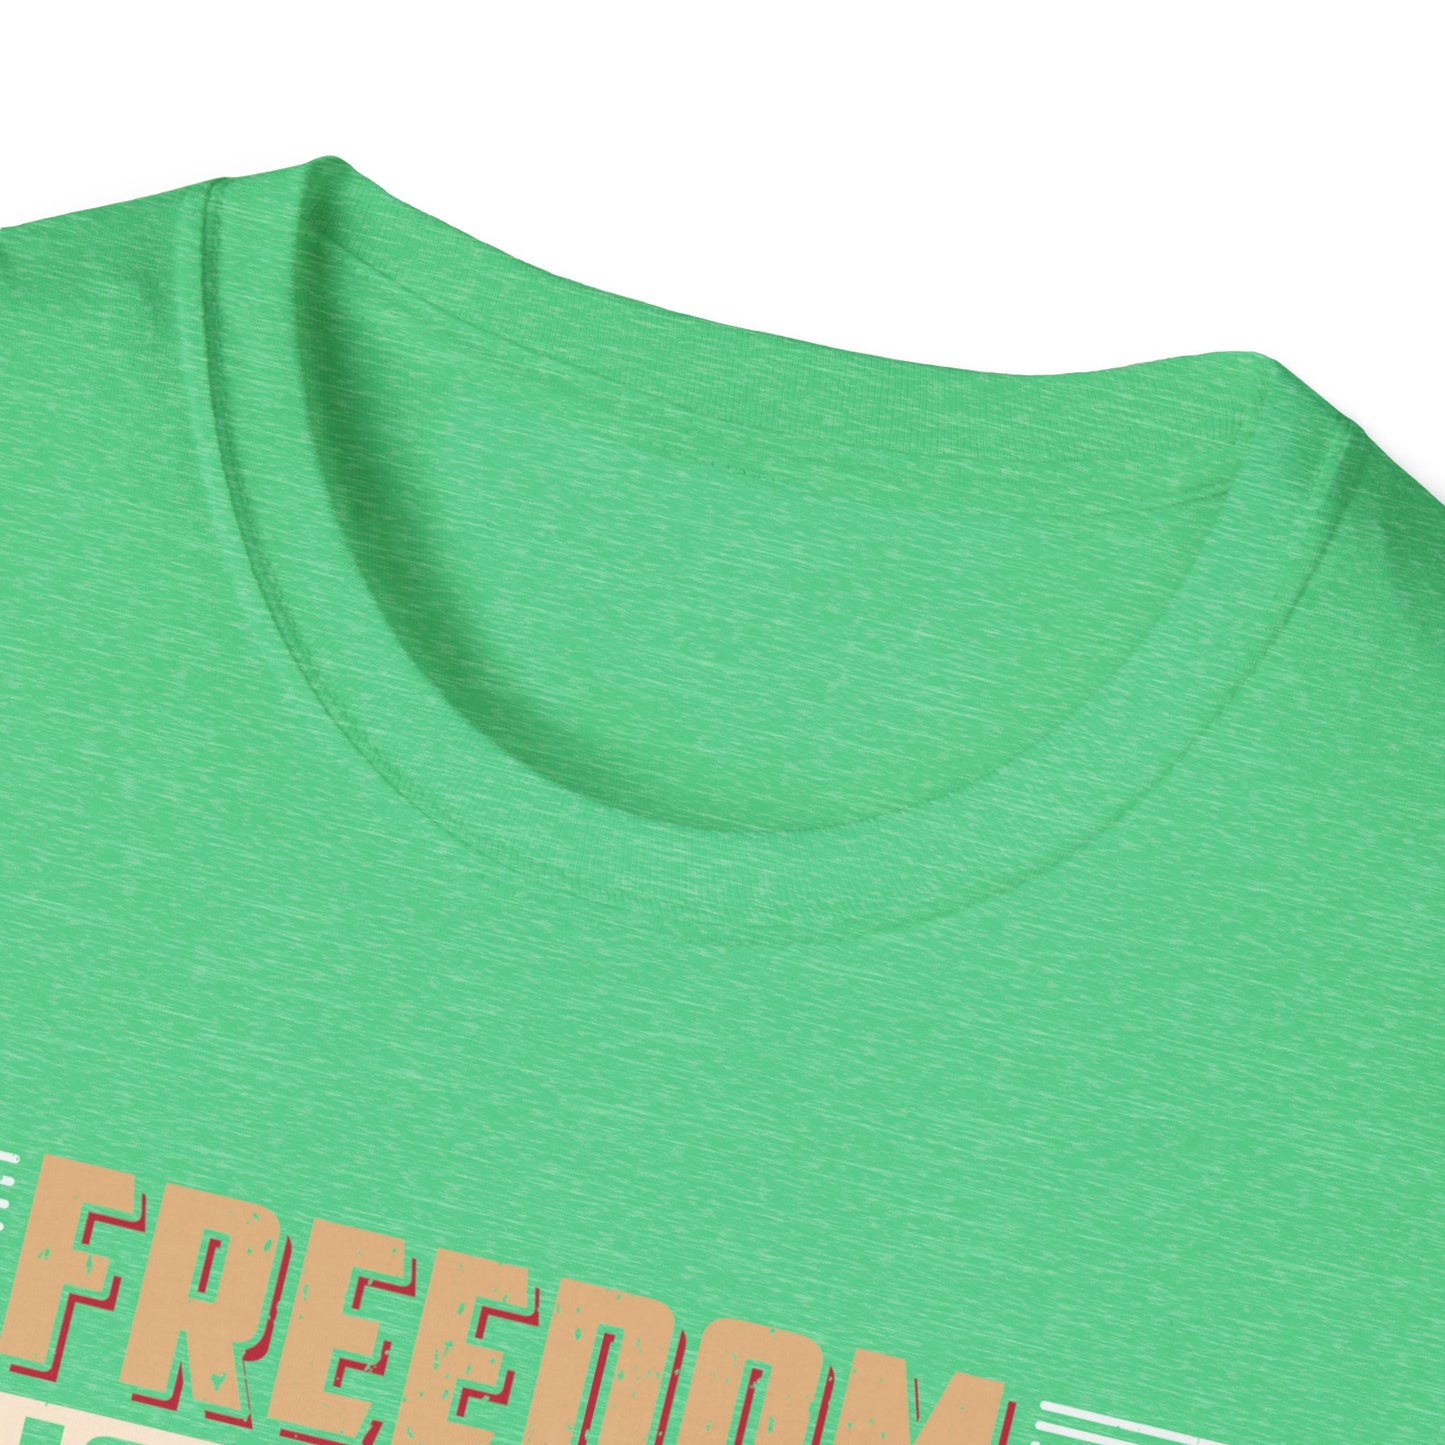 Freedom Isn't Free - Unisex Softstyle T-Shirt